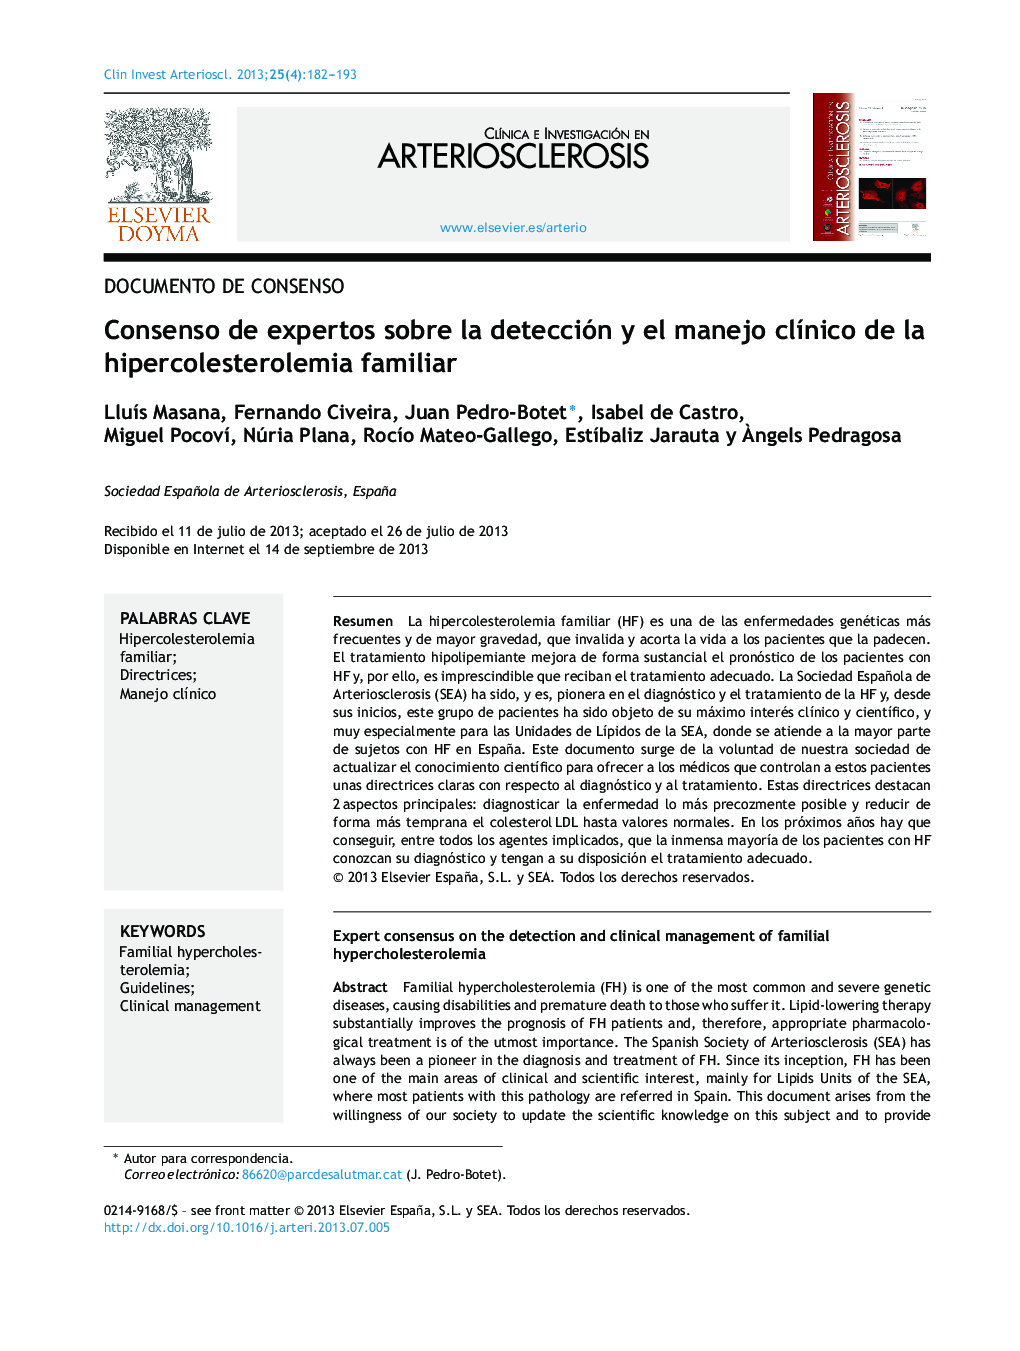 Consenso de expertos sobre la detección y el manejo clínico de la hipercolesterolemia familiar